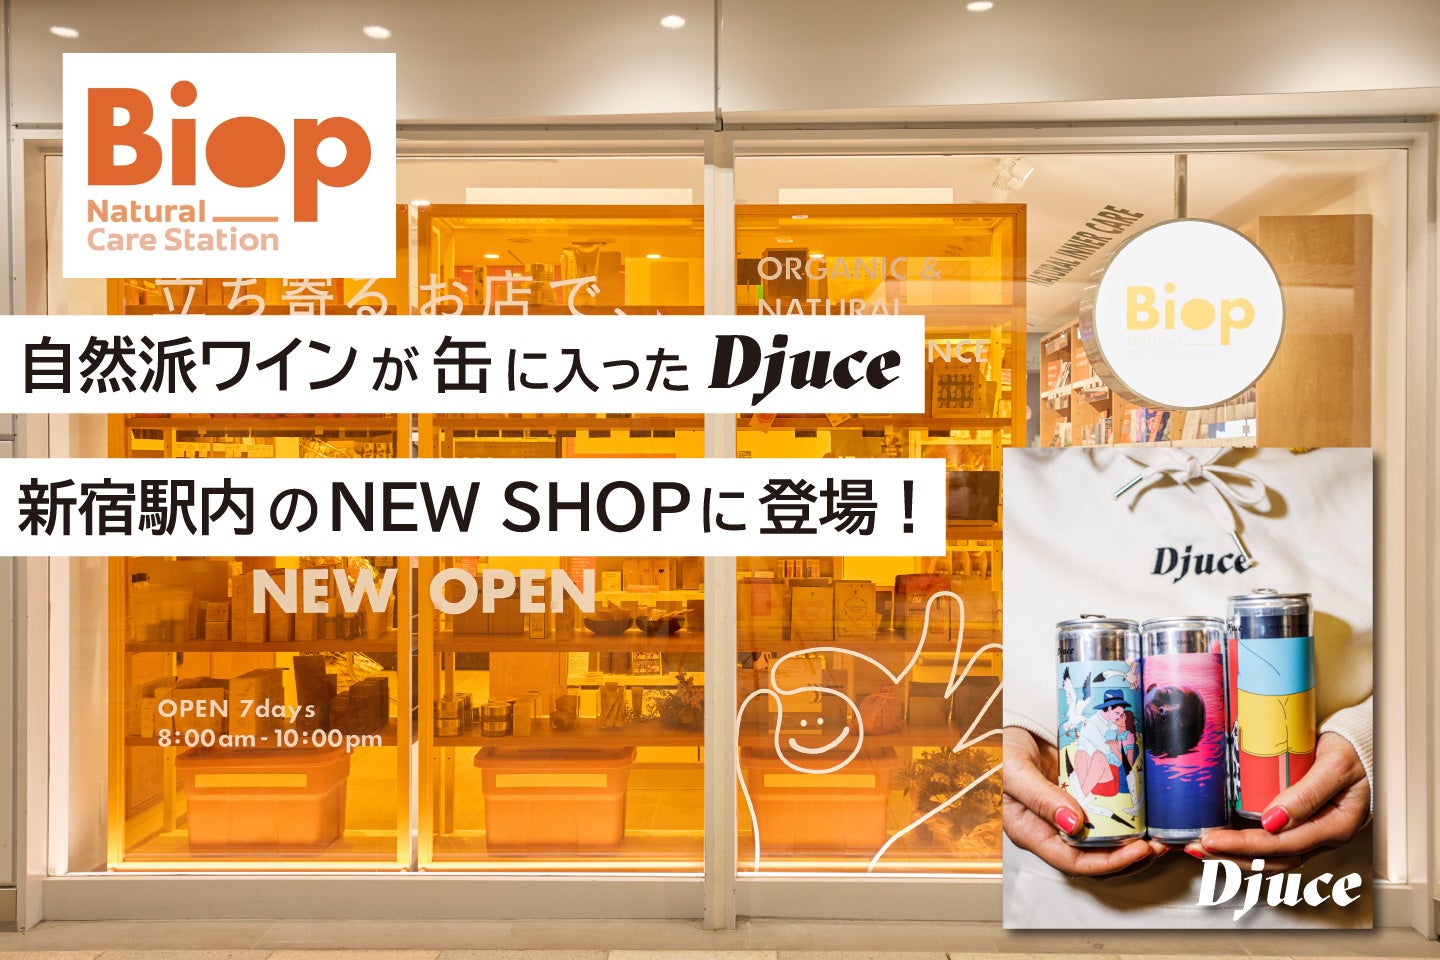 【5/1発売】缶に入った自然派ワイン『Djuce（ディージュース）』がJR新宿駅改札内の新ショップ Biop(ビオップ)で販売開始